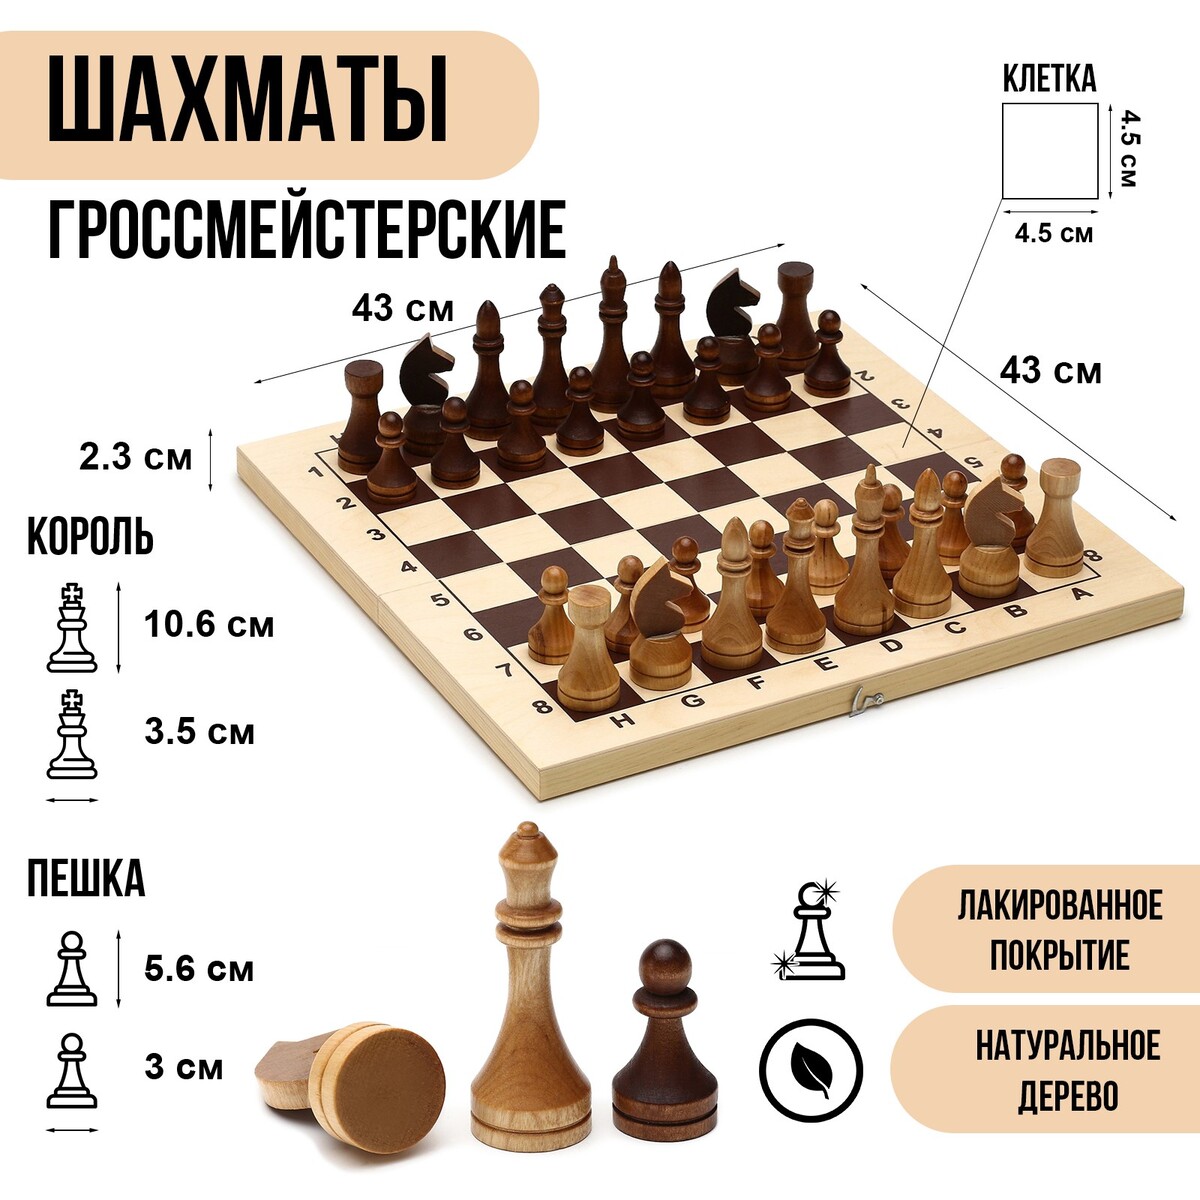 Шахматы деревянные гроссмейстерские, турнирные 43 х 43 см, король h-10.6 см, пешка h-5.6 см шахматы турнирные деревянные 40 х 40 см